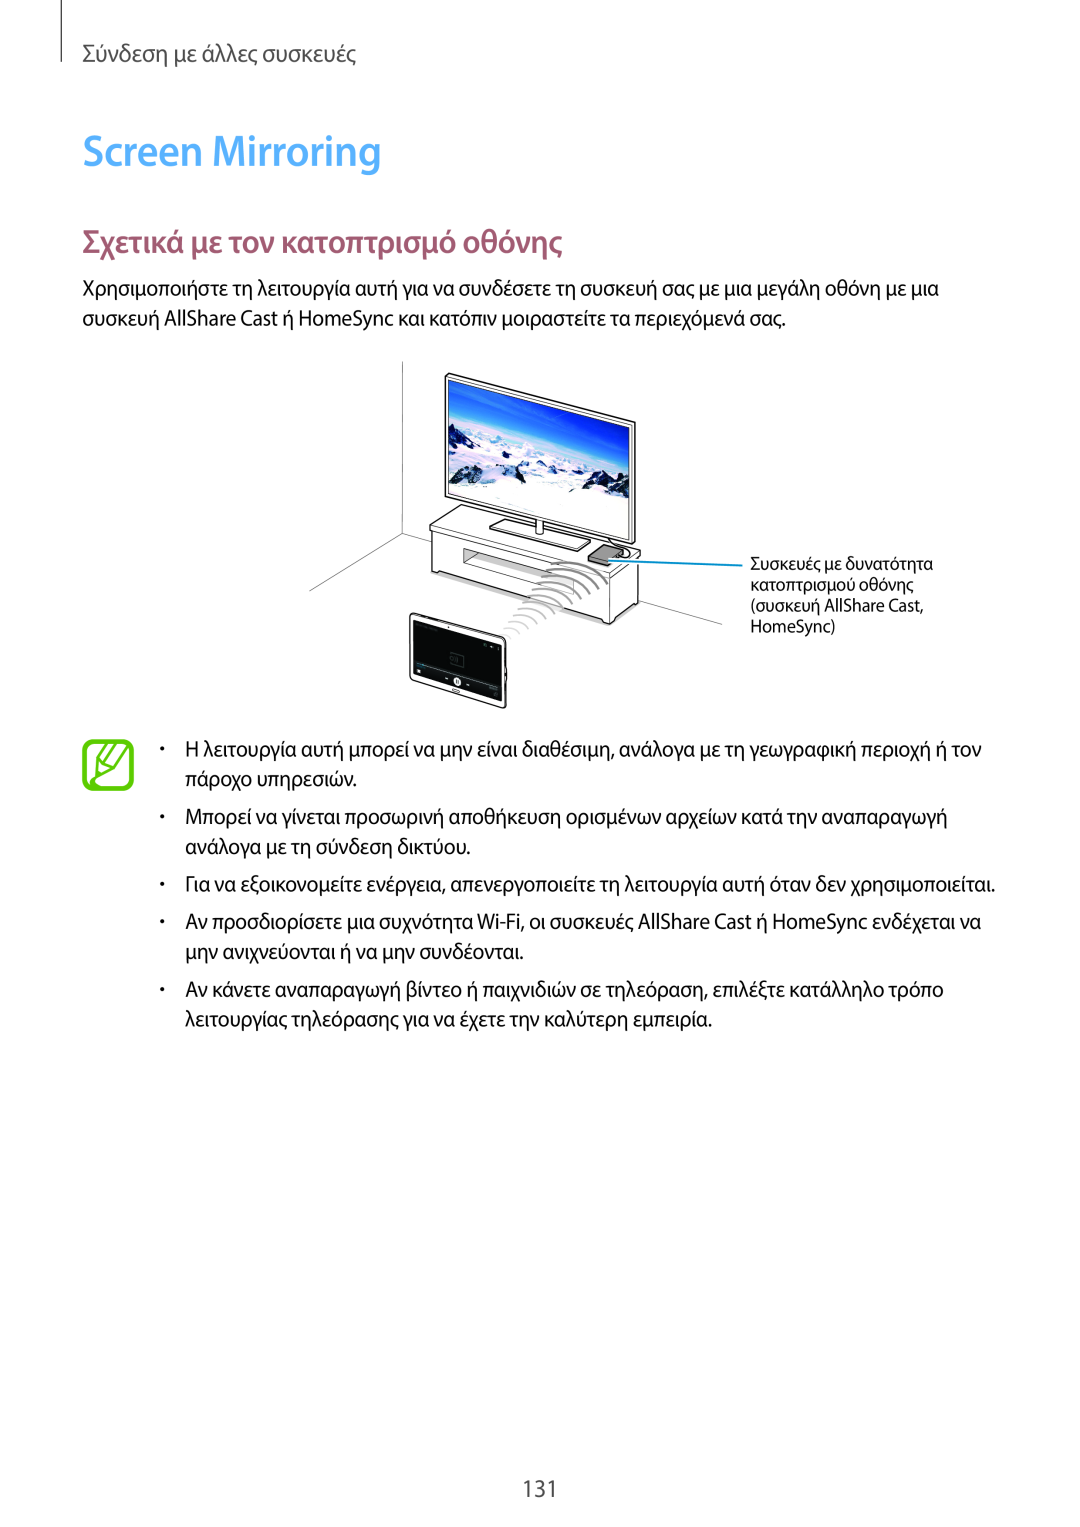 Samsung SM-T705NTSAEUR, SM-T805NTSAEUR manual Screen Mirroring, Σχετικά με τον κατοπτρισμό οθόνης, Σύνδεση με άλλες συσκευές 